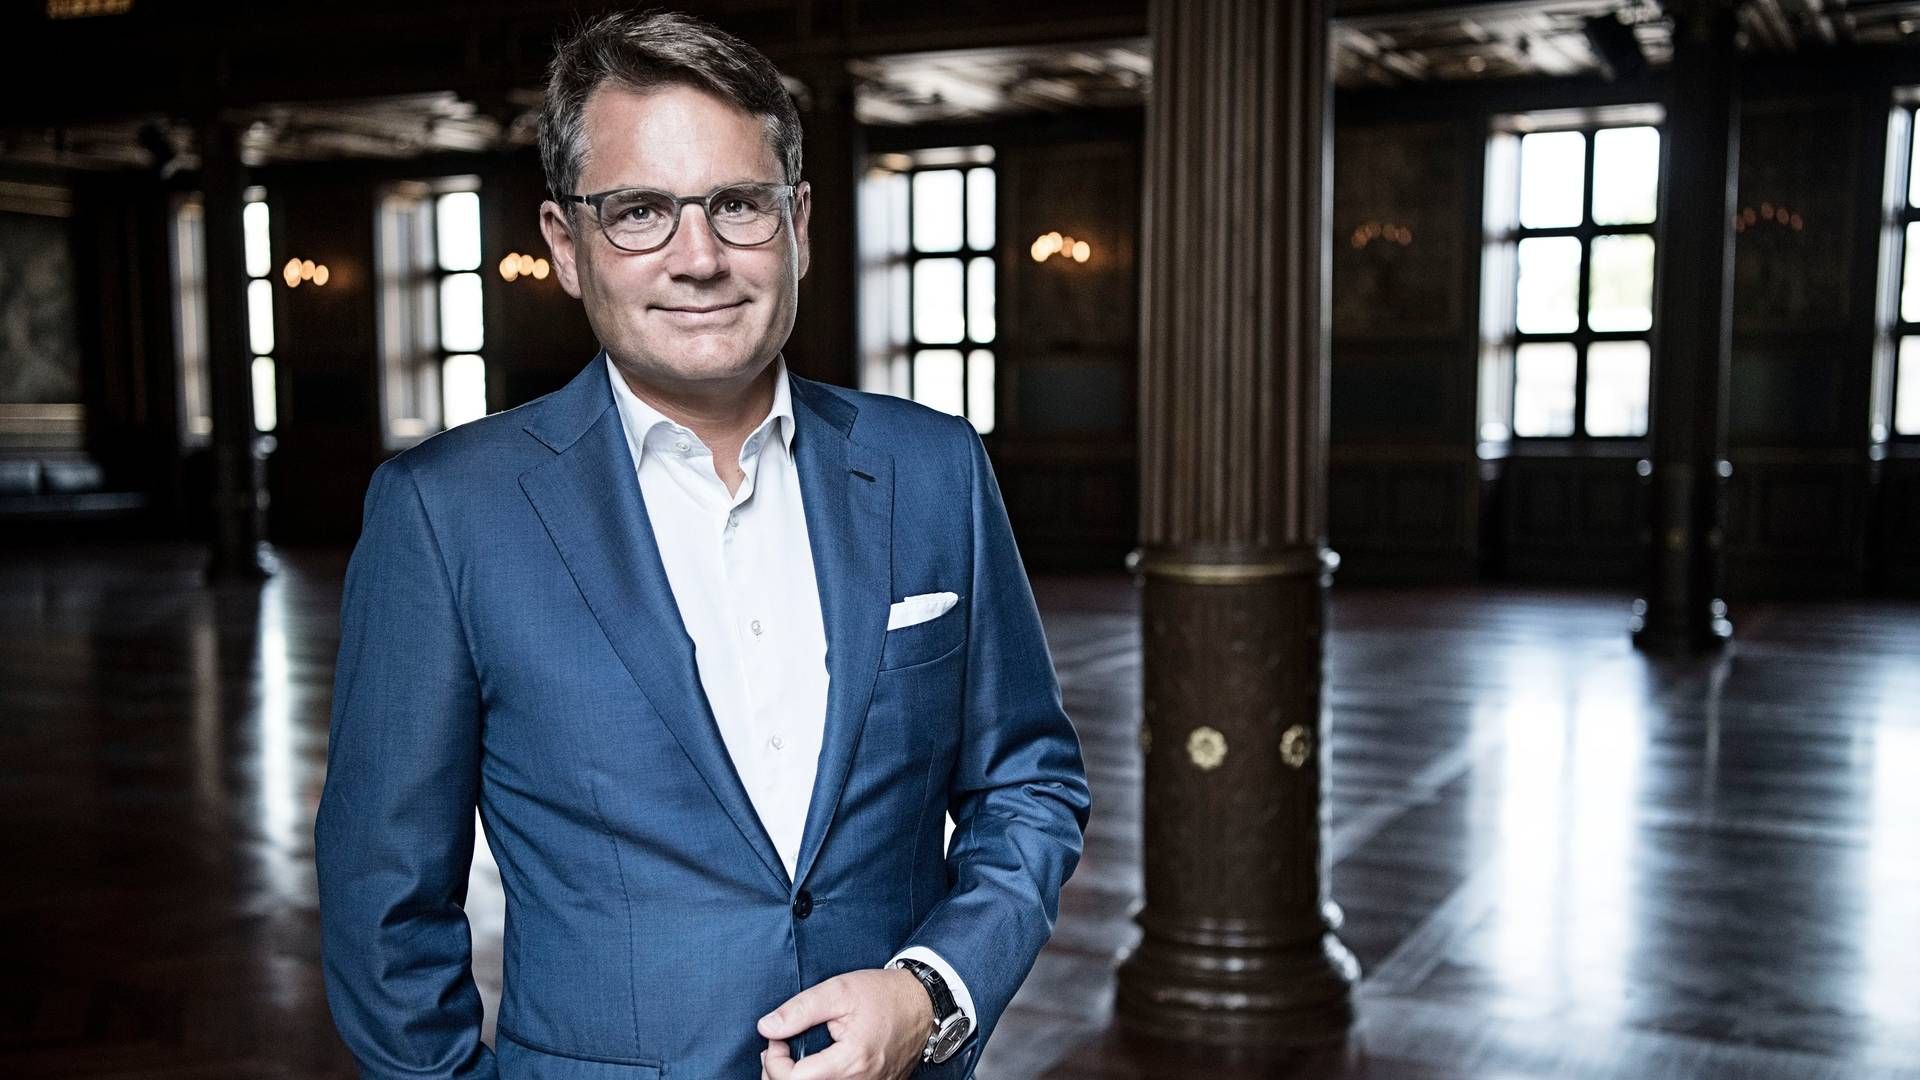 Adm. direktør i Dansk Erhverv Brian Mikkelsen | Foto: PR/Dansk Erhverv